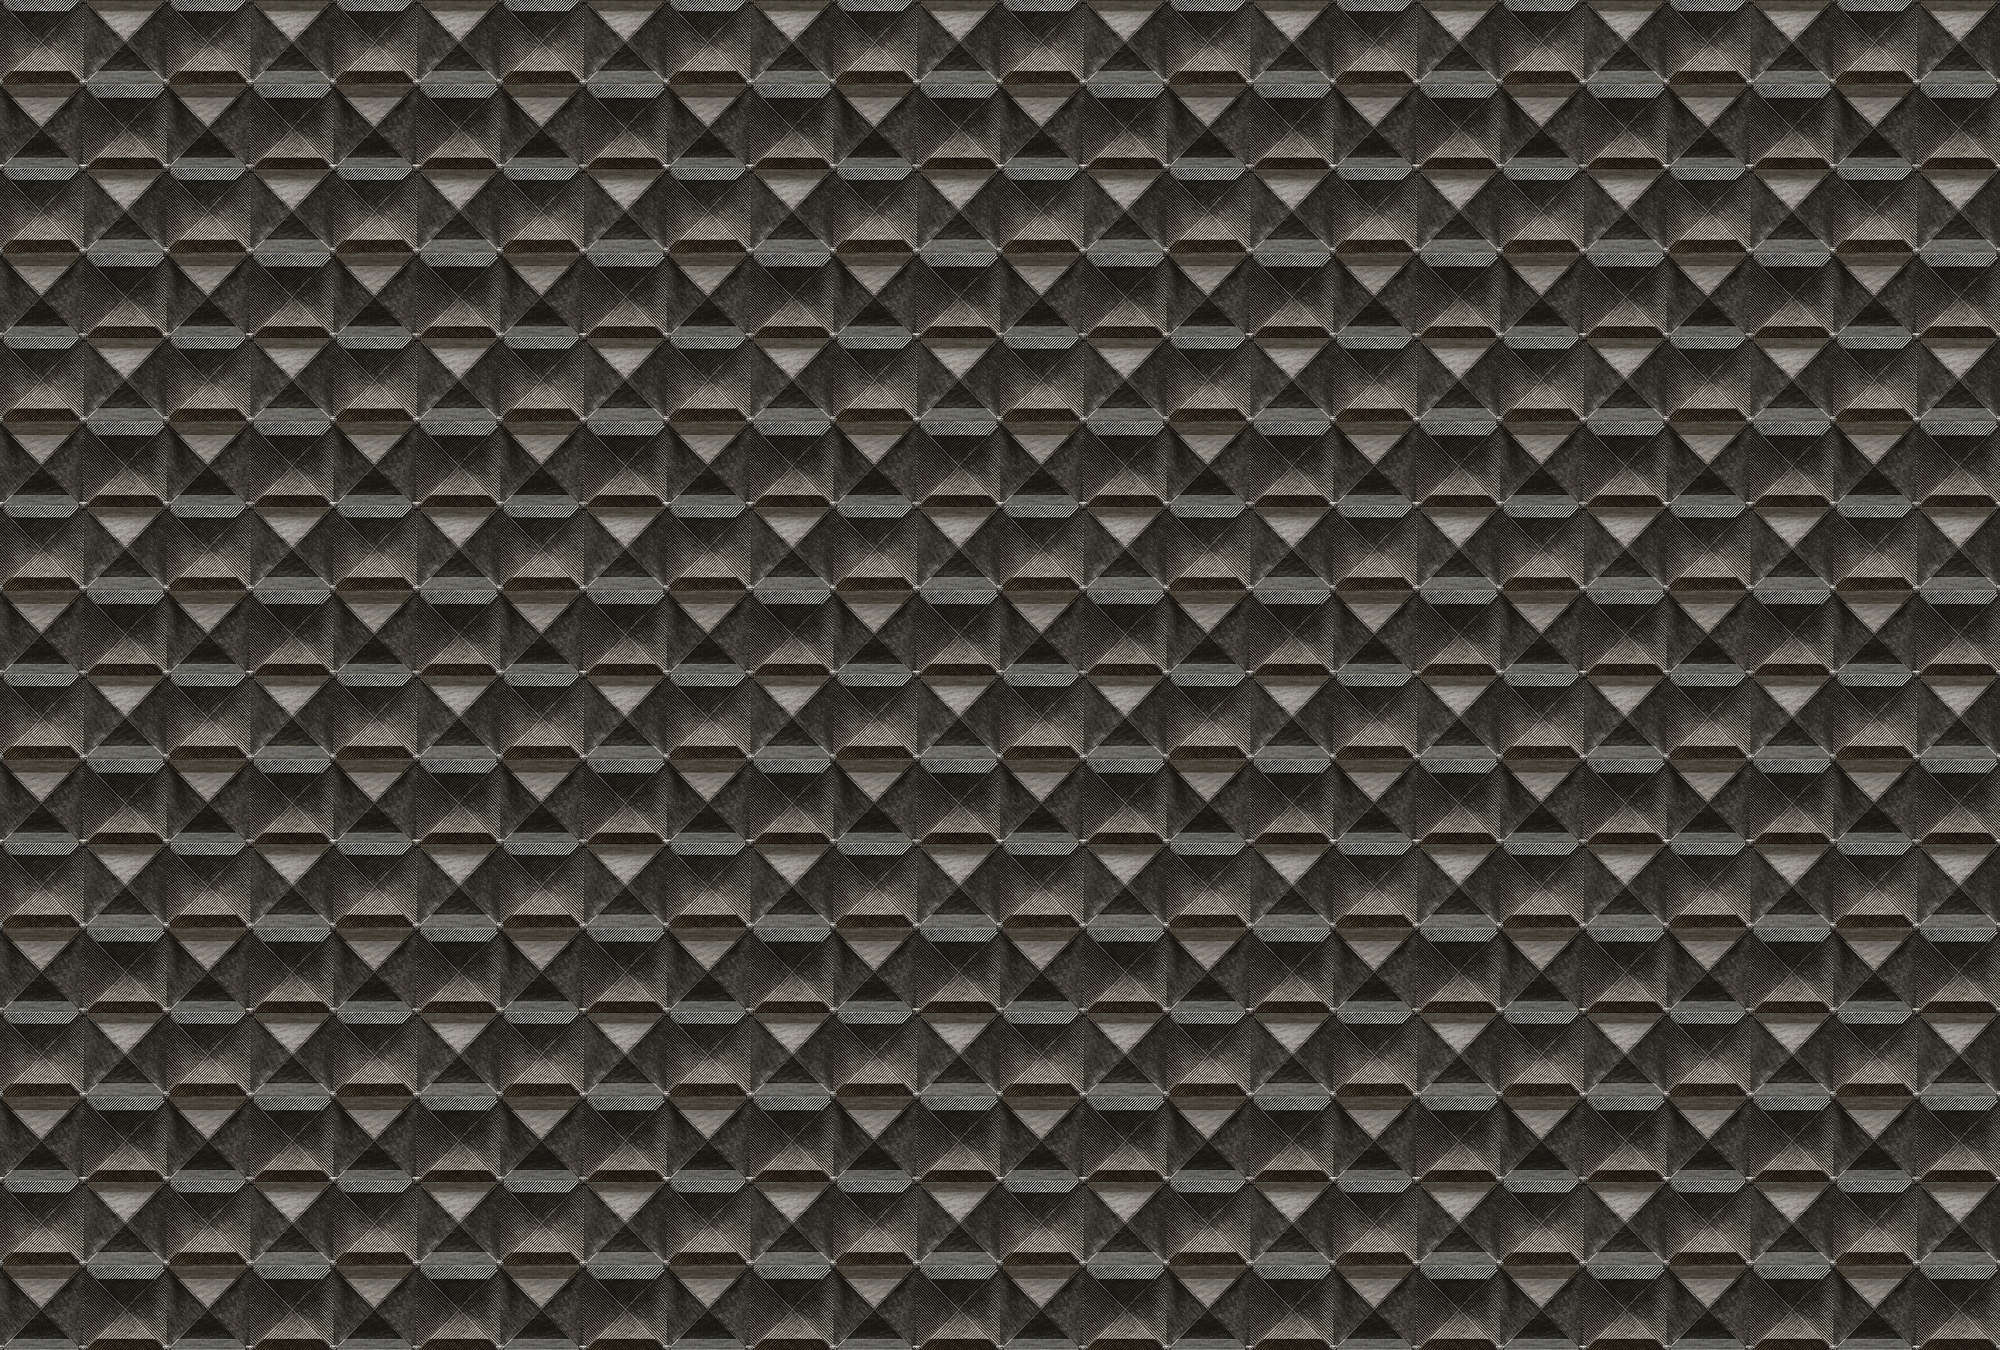             De rand 1 - 3D behang met ruitjesmotief van metaal - bruin, zwart | parelmoer glad vlies
        